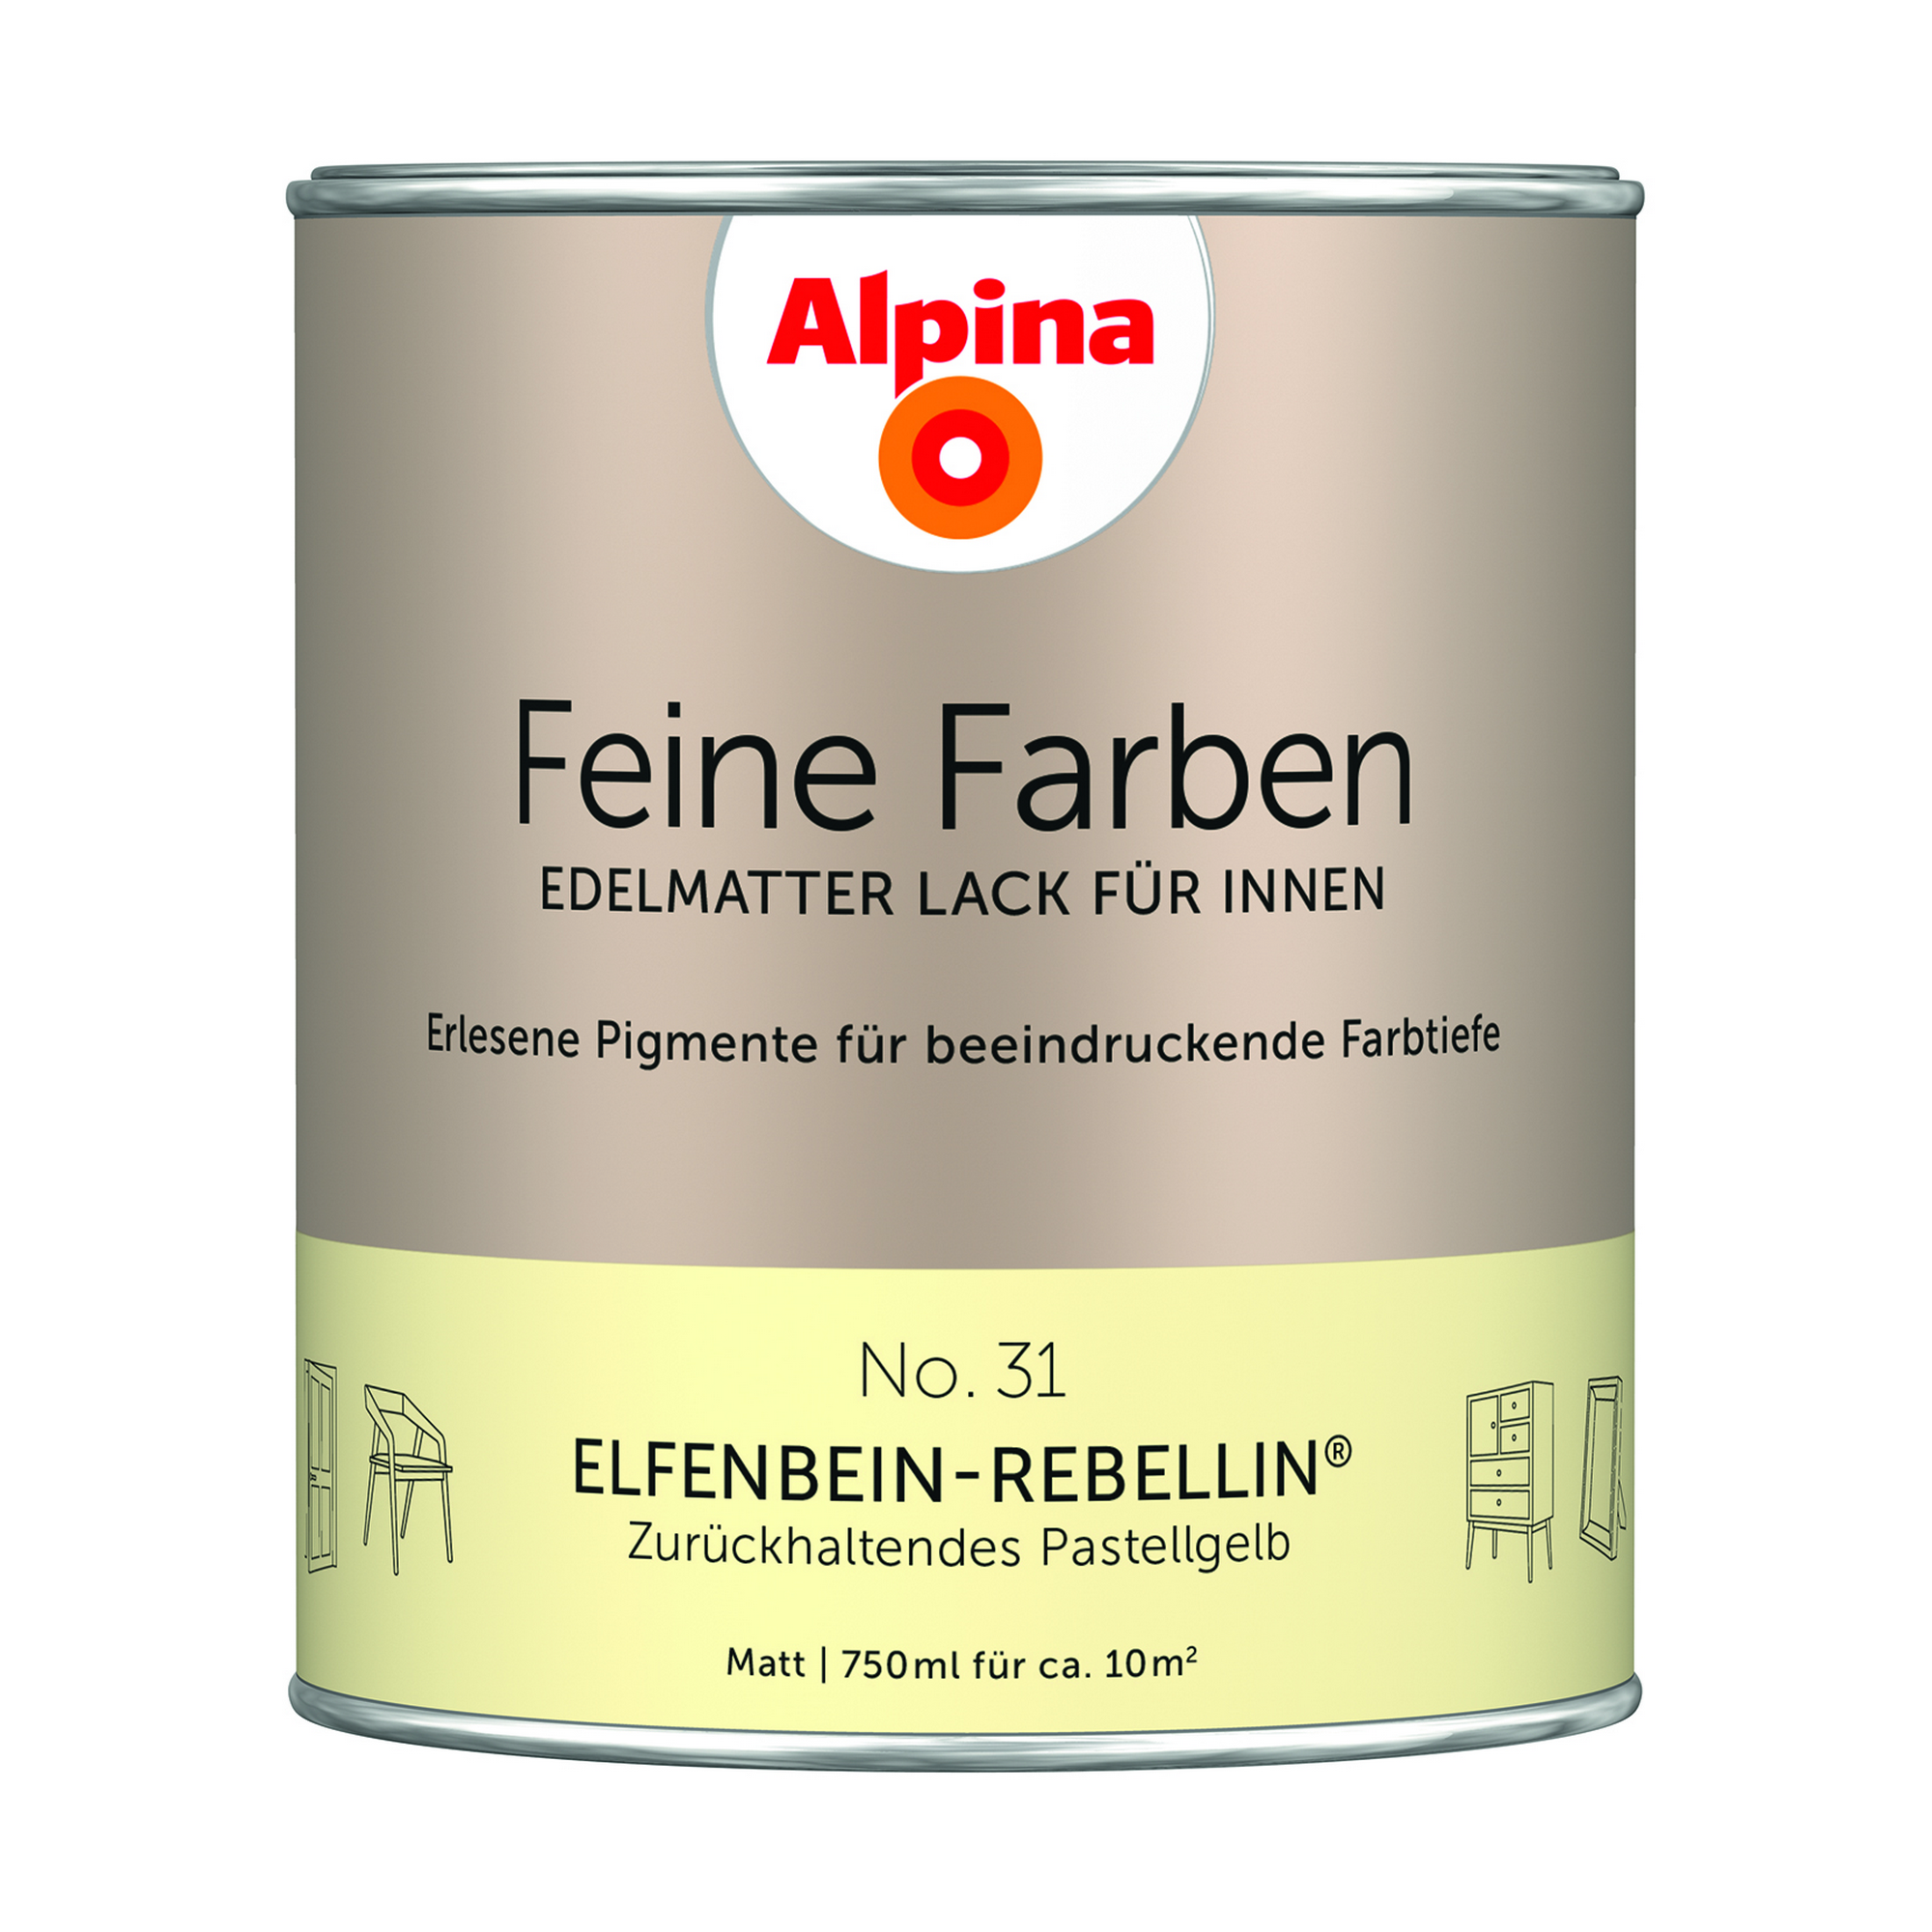 Feine Farben 'Elfenbein Rebellin' pastellgelb matt 750 ml + product picture